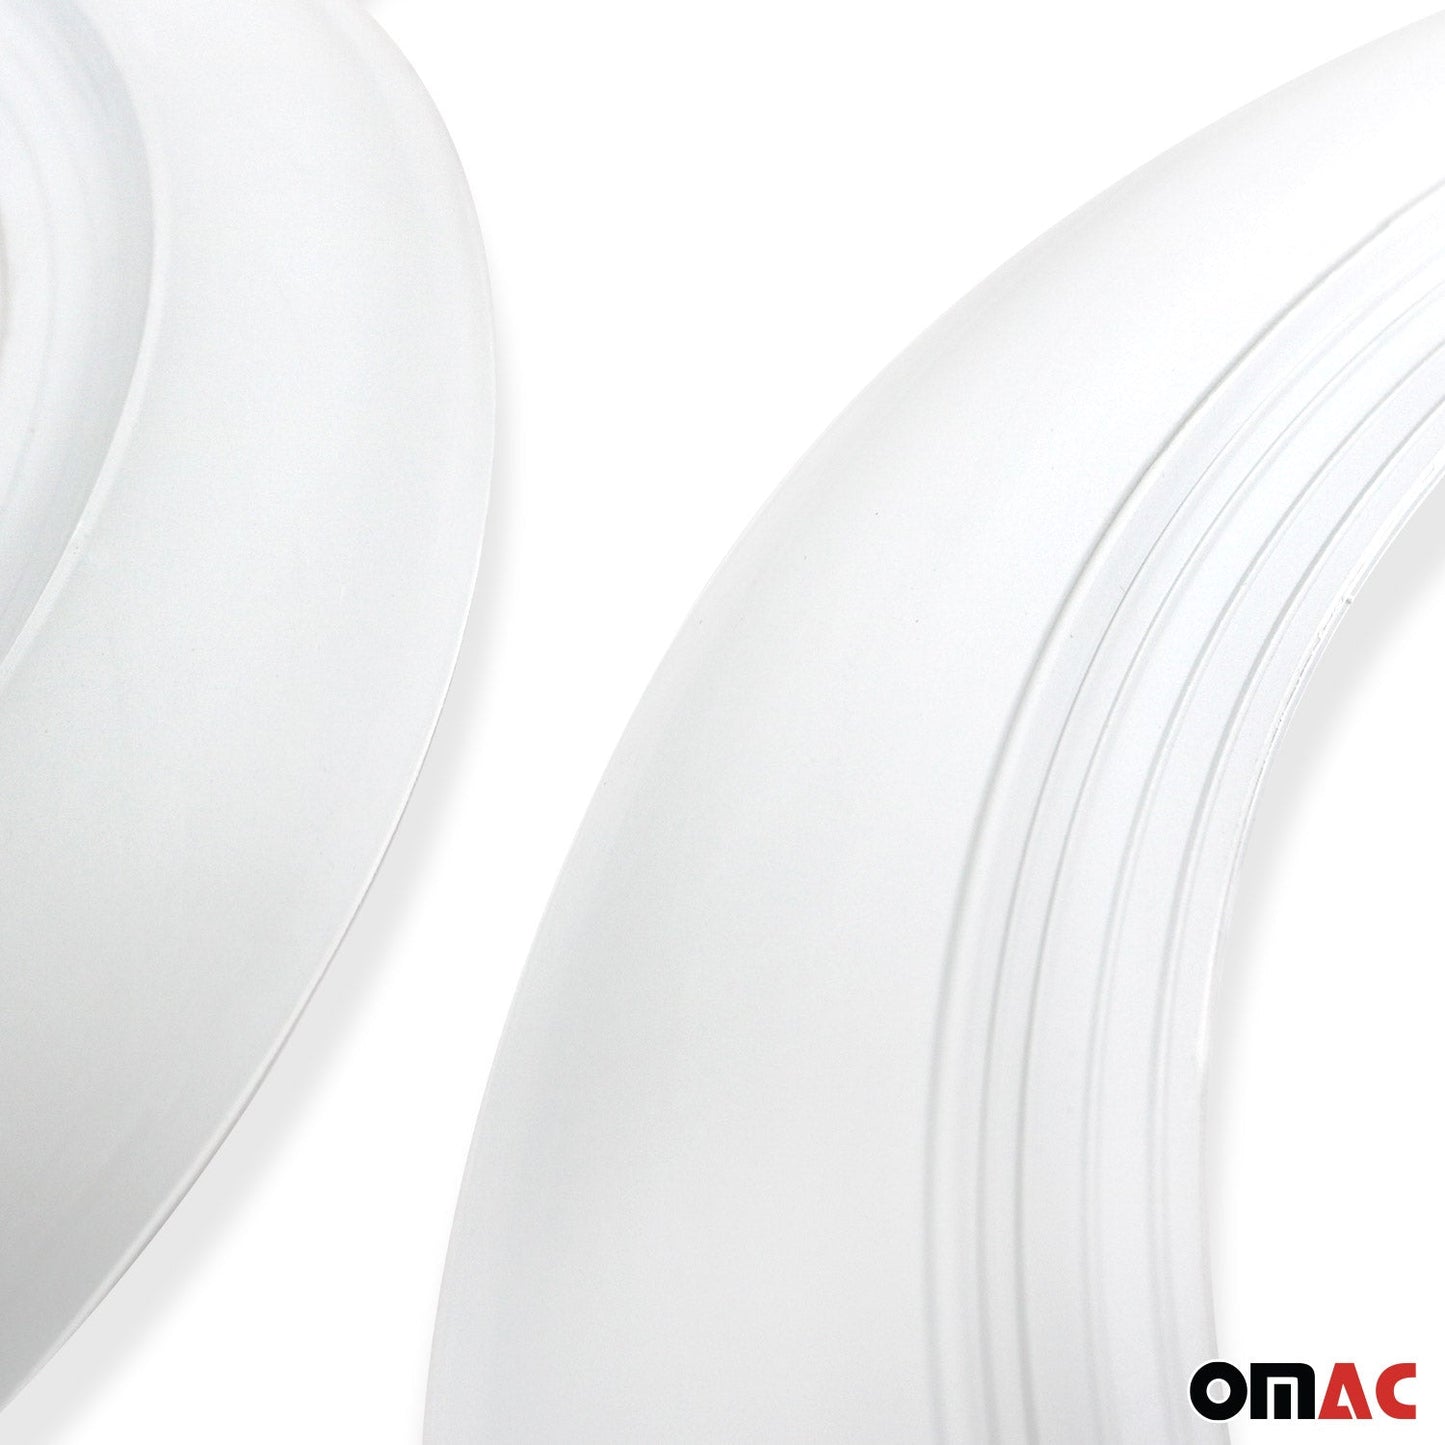 OMAC 15" Rims Portawalls White Wall Tire Insert Trim Sidewall Set of 4 Pcs 96TW015W